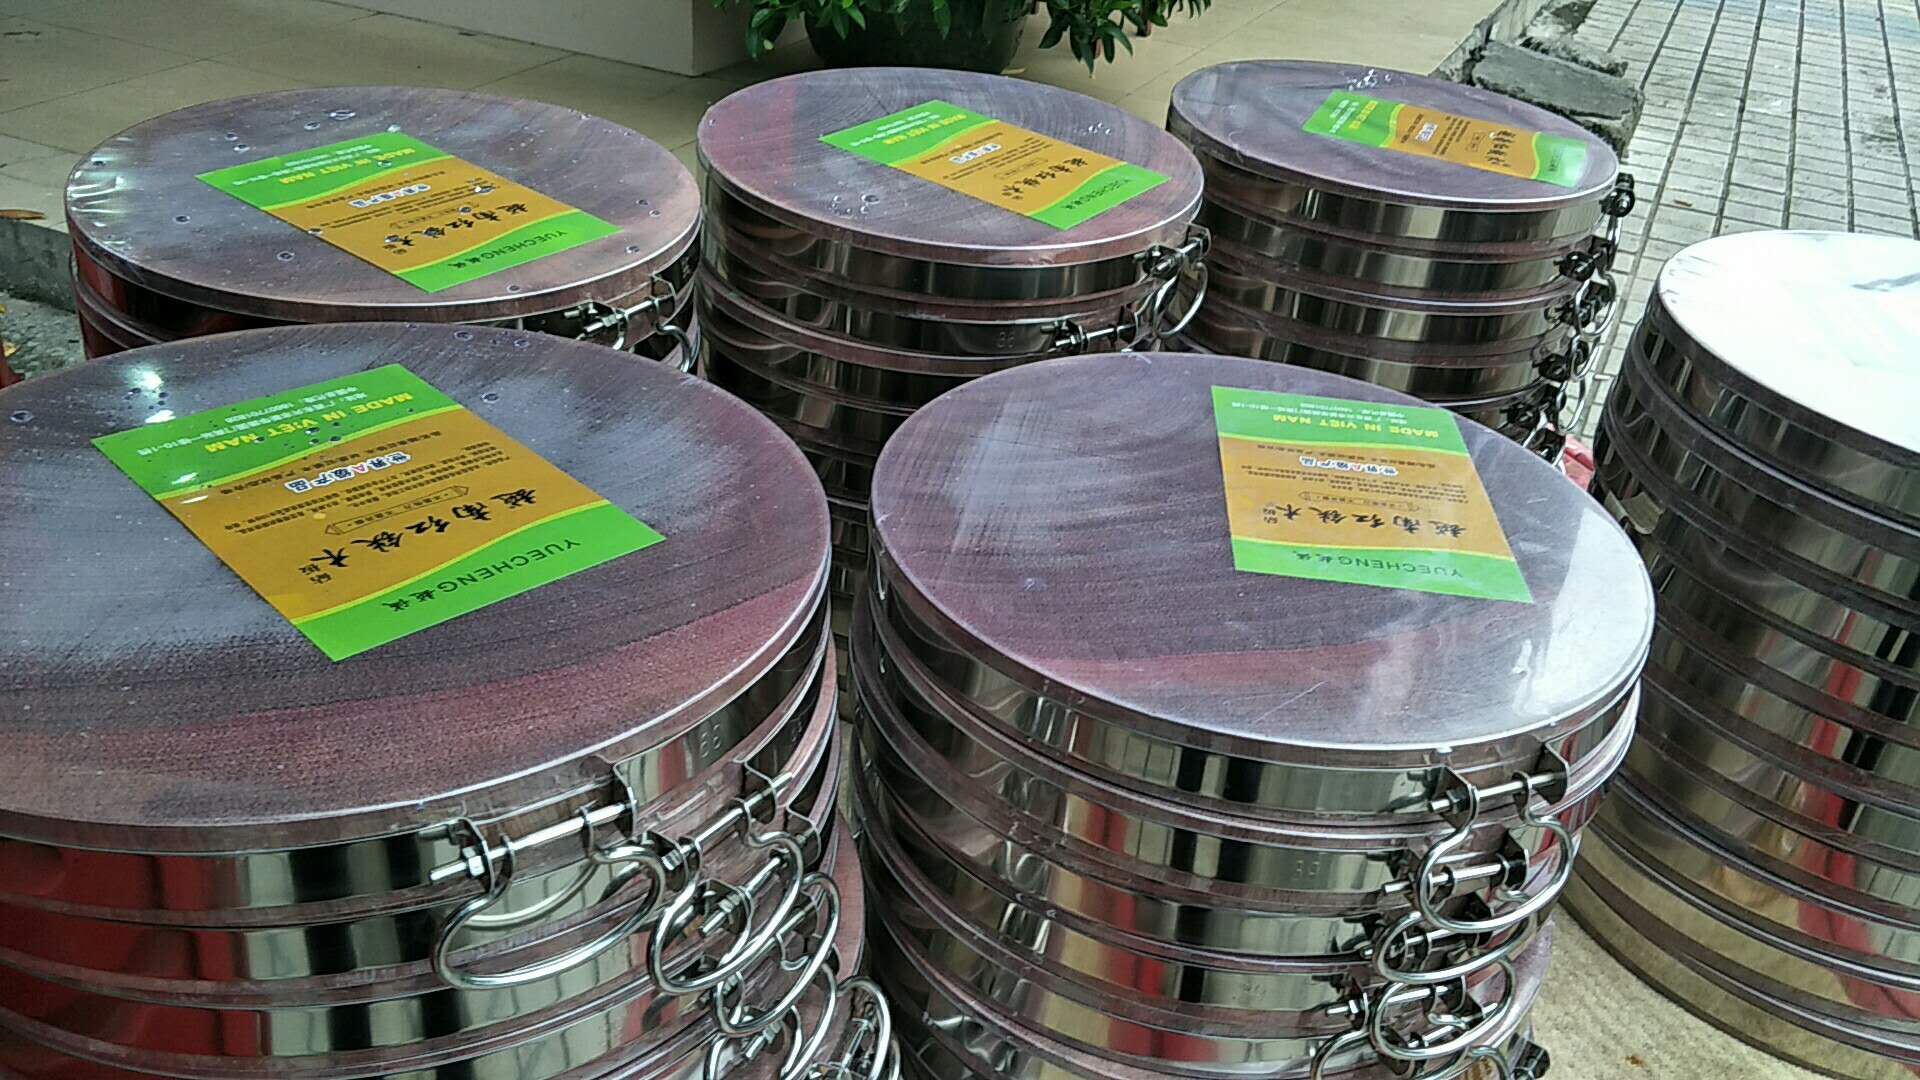 广西红木砧板|广西红木砧板厂家|广西红木砧板厂家直销|广西红木砧板多少钱一个|广西梨花木砧板价格